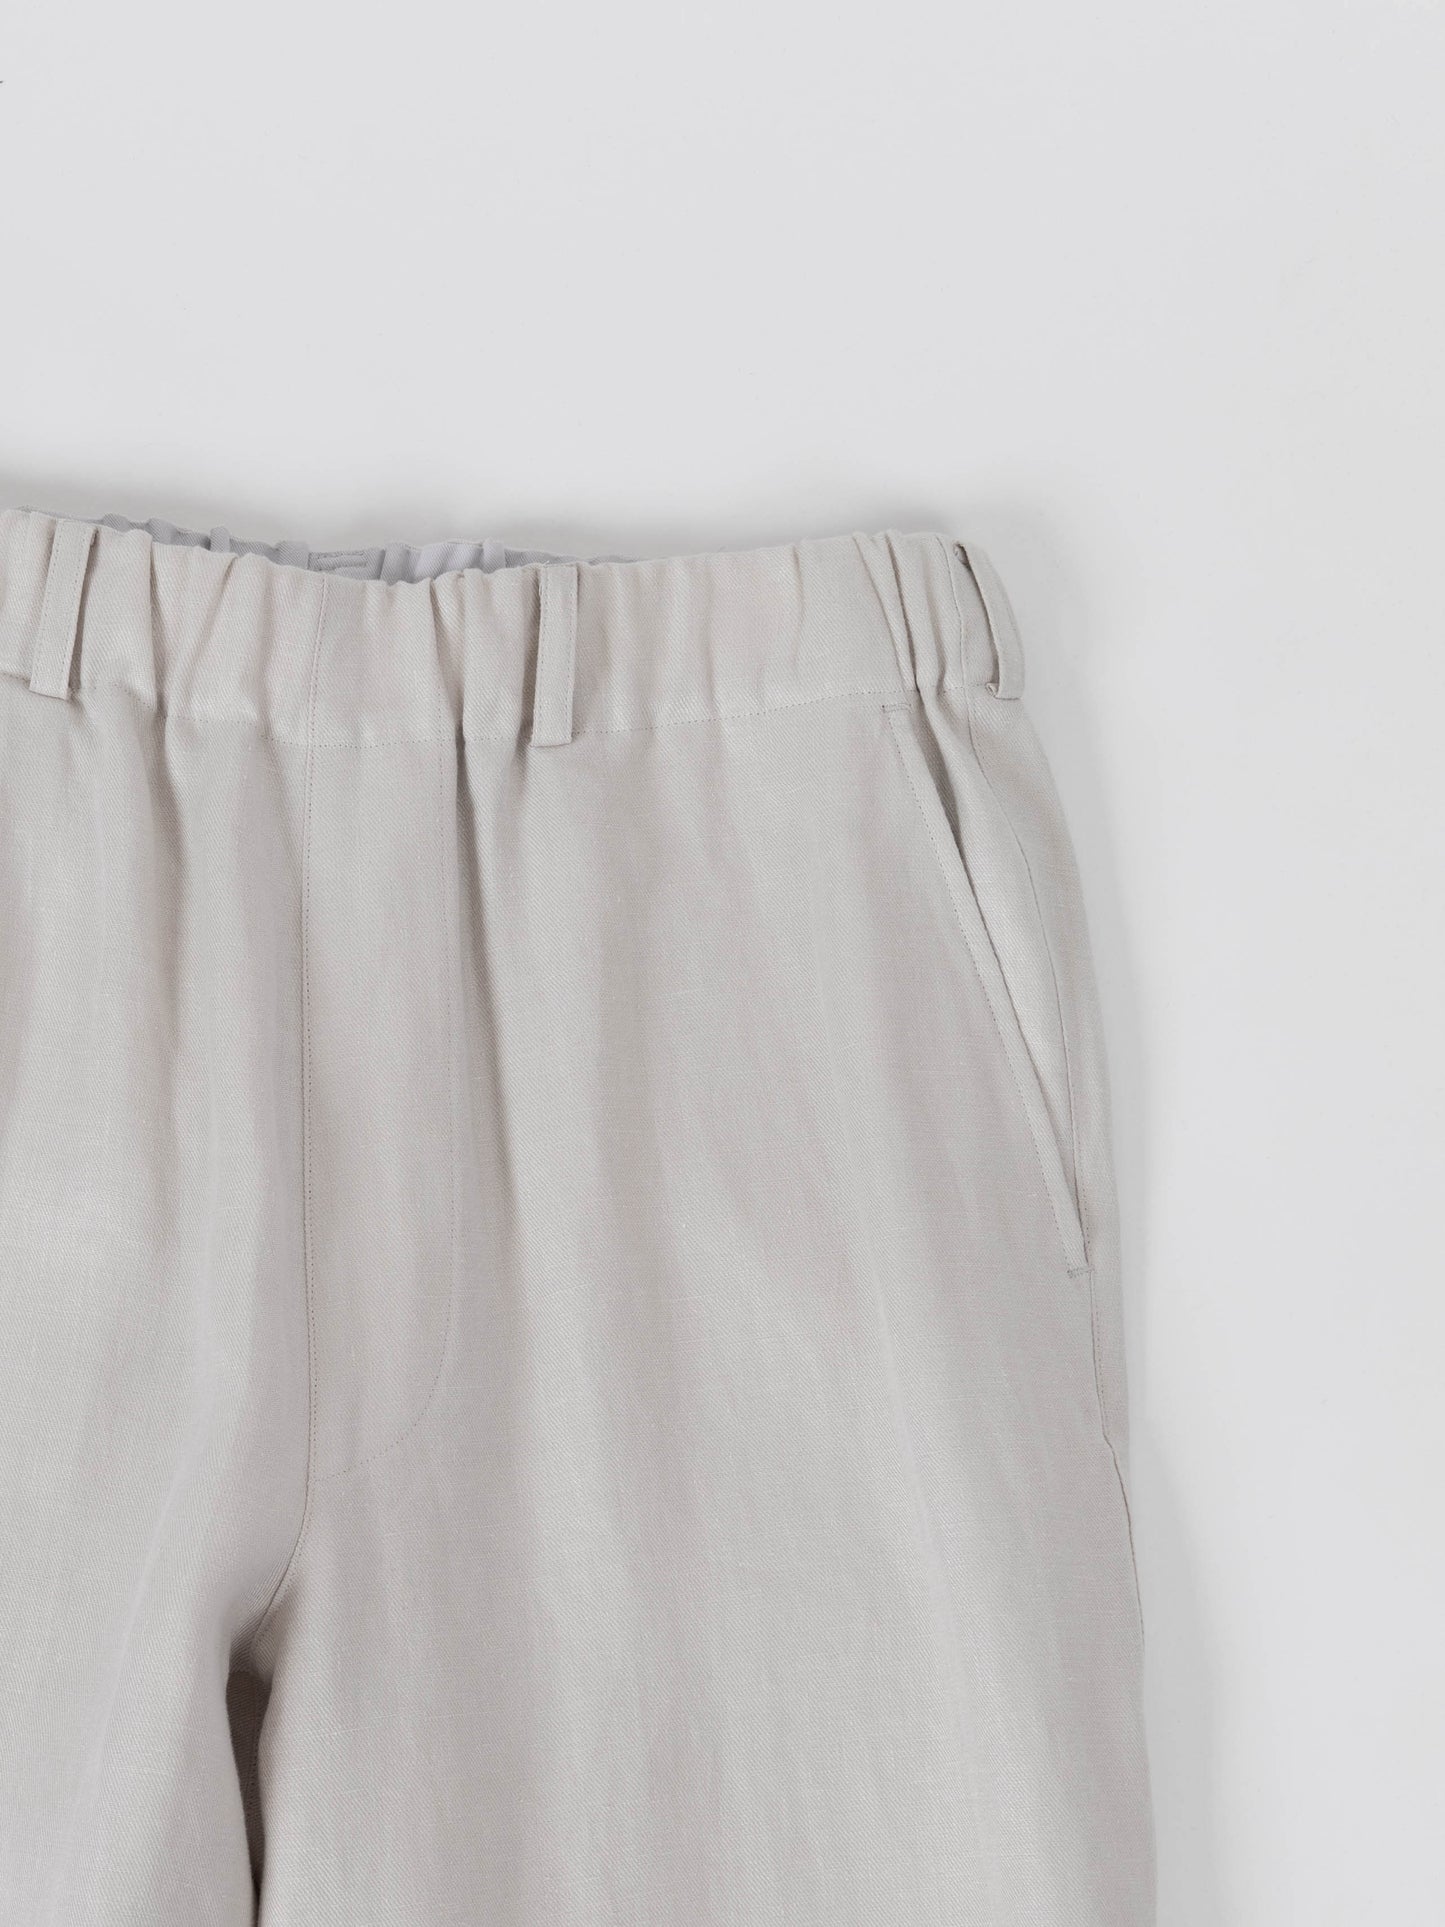 HIGH DENSITY LINEN PANTS for WOMEN｜WHITE GRAY